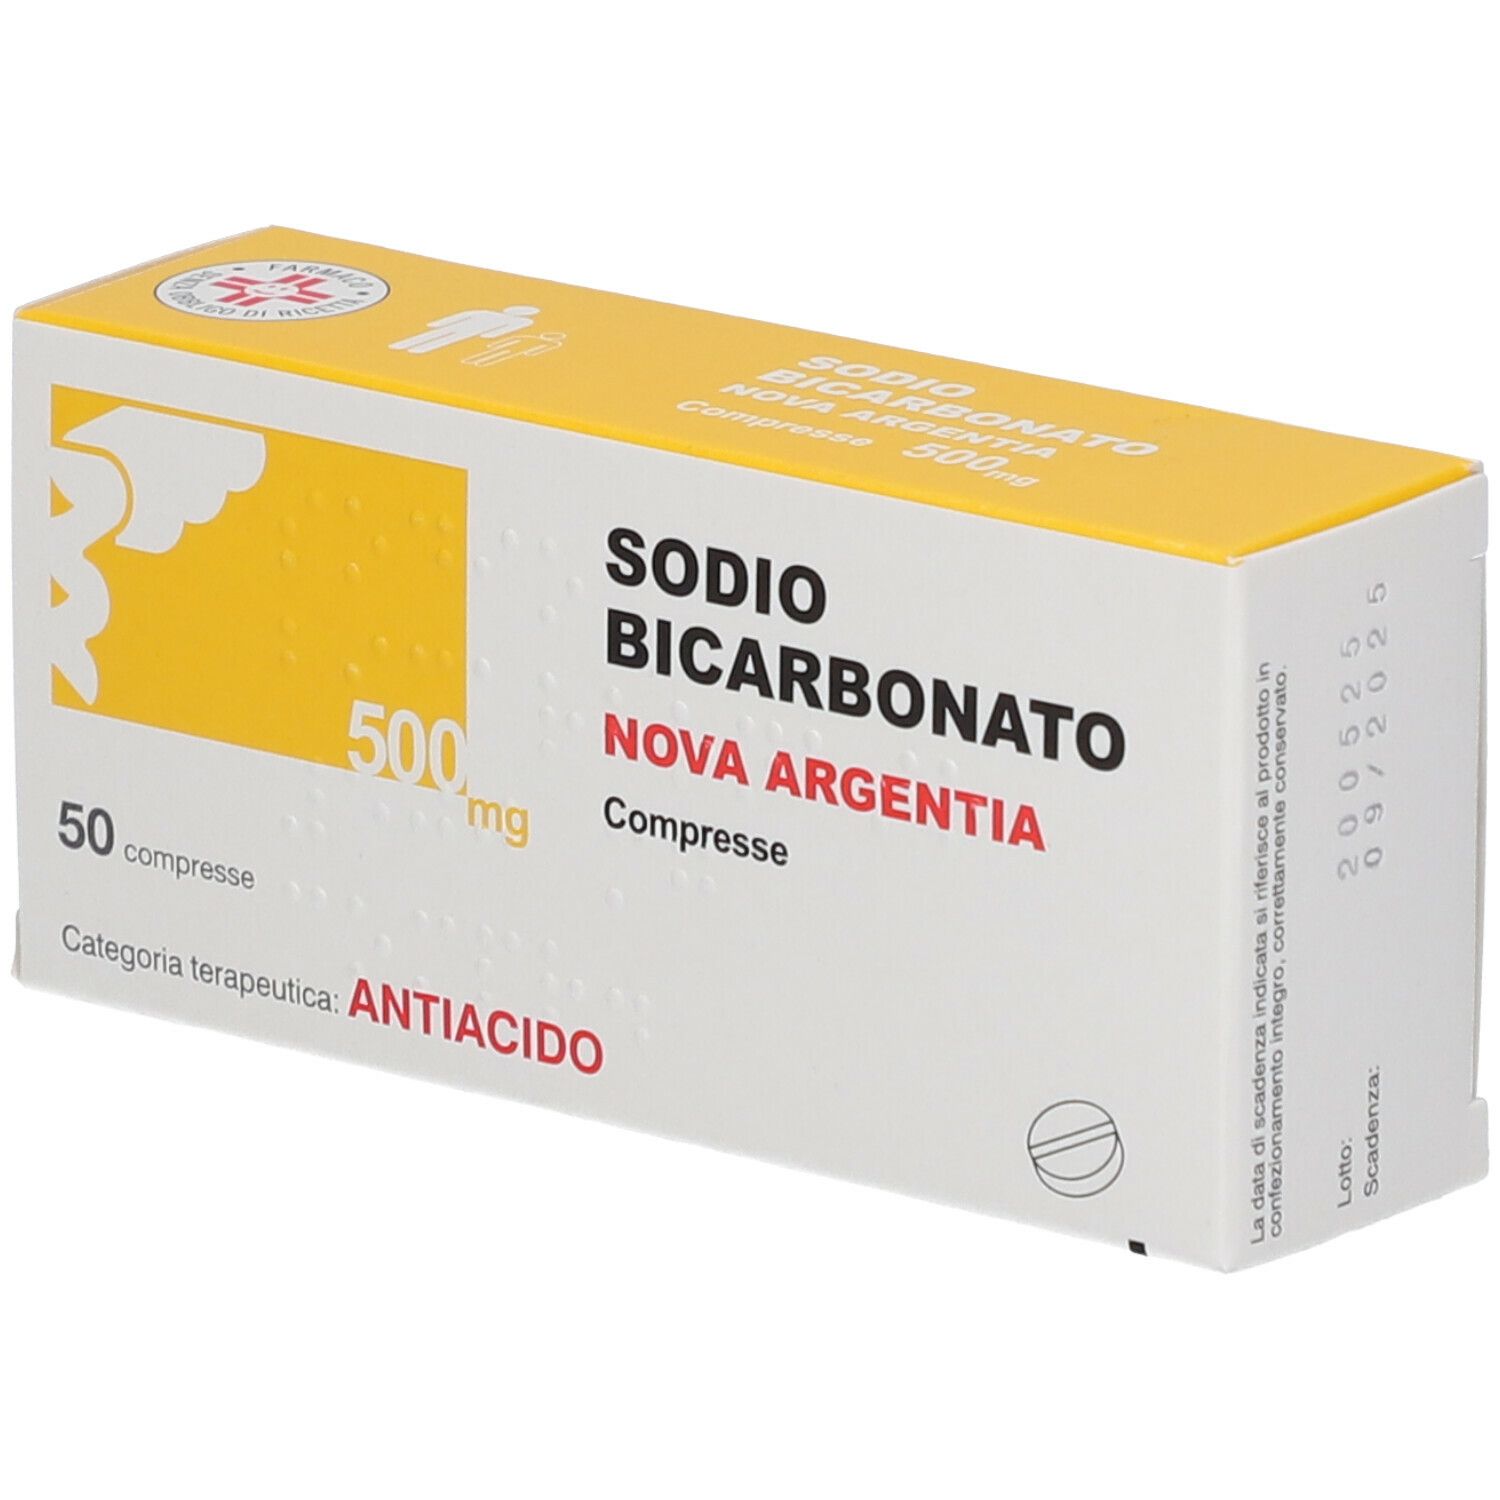 Nova Agentia Sodio Bicarbonato 500 mg